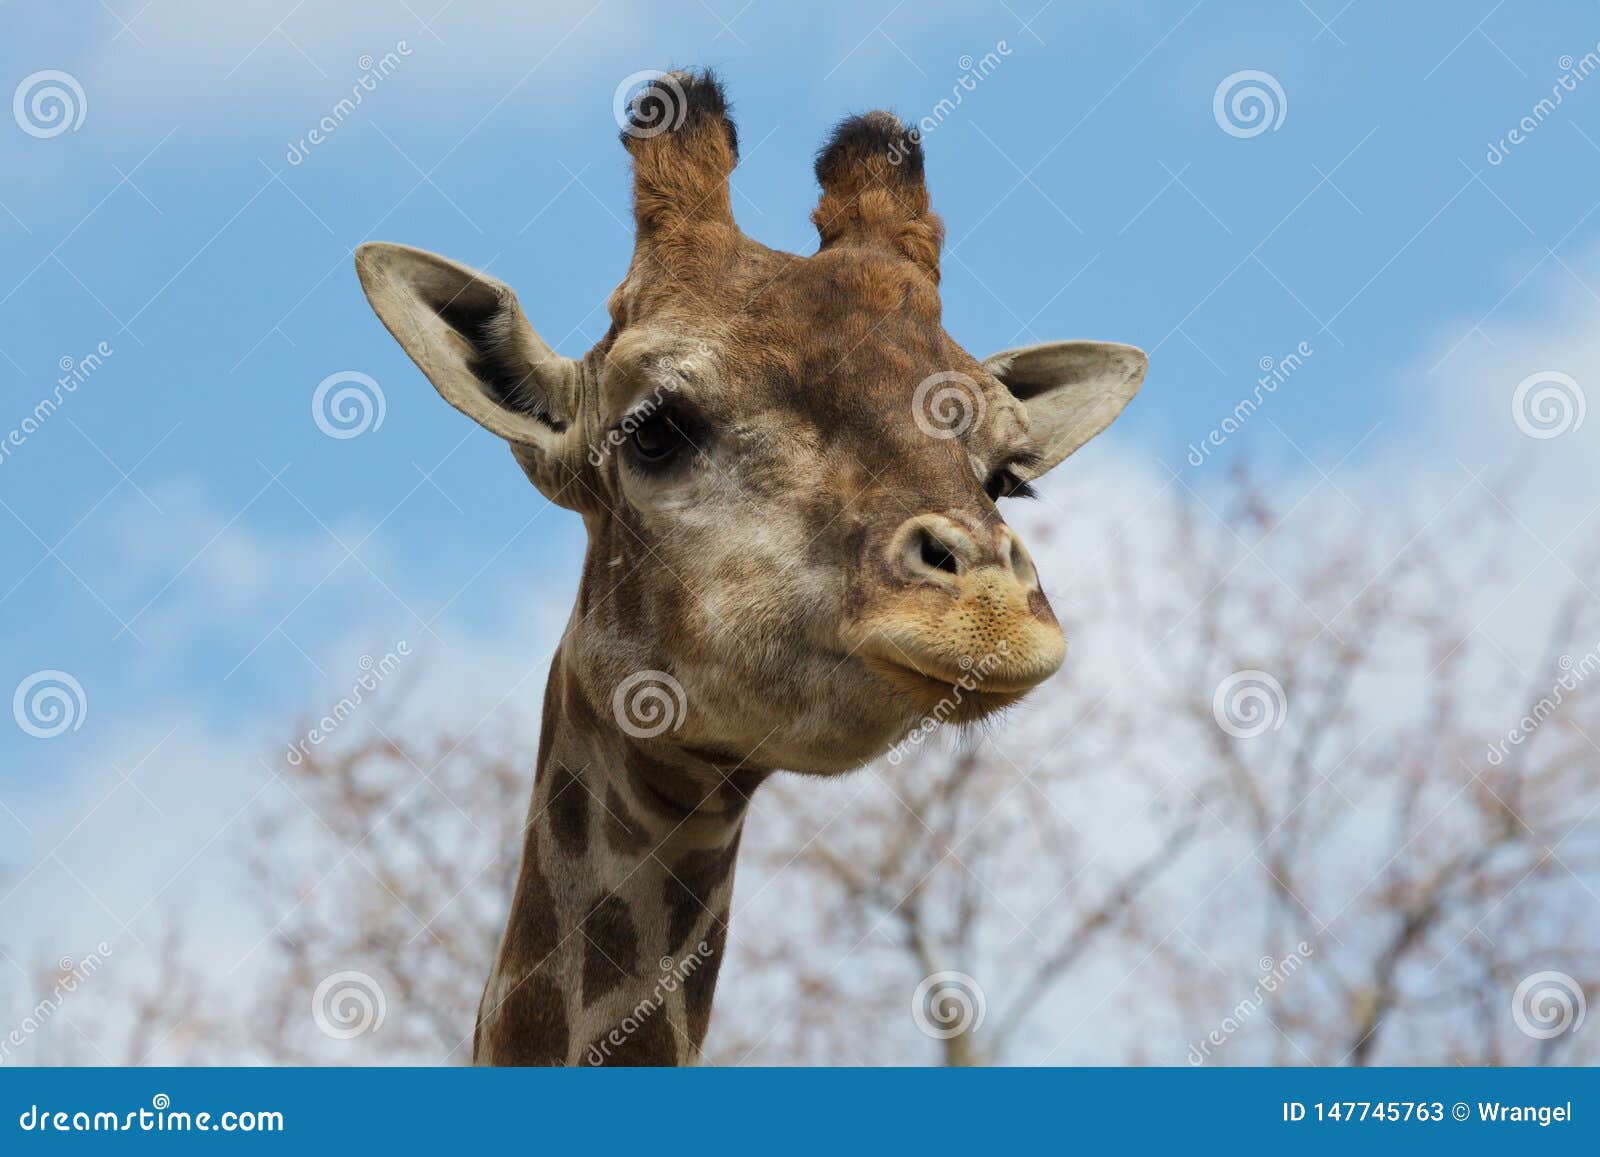 angolan giraffe giraffa camelopardalis angolensis